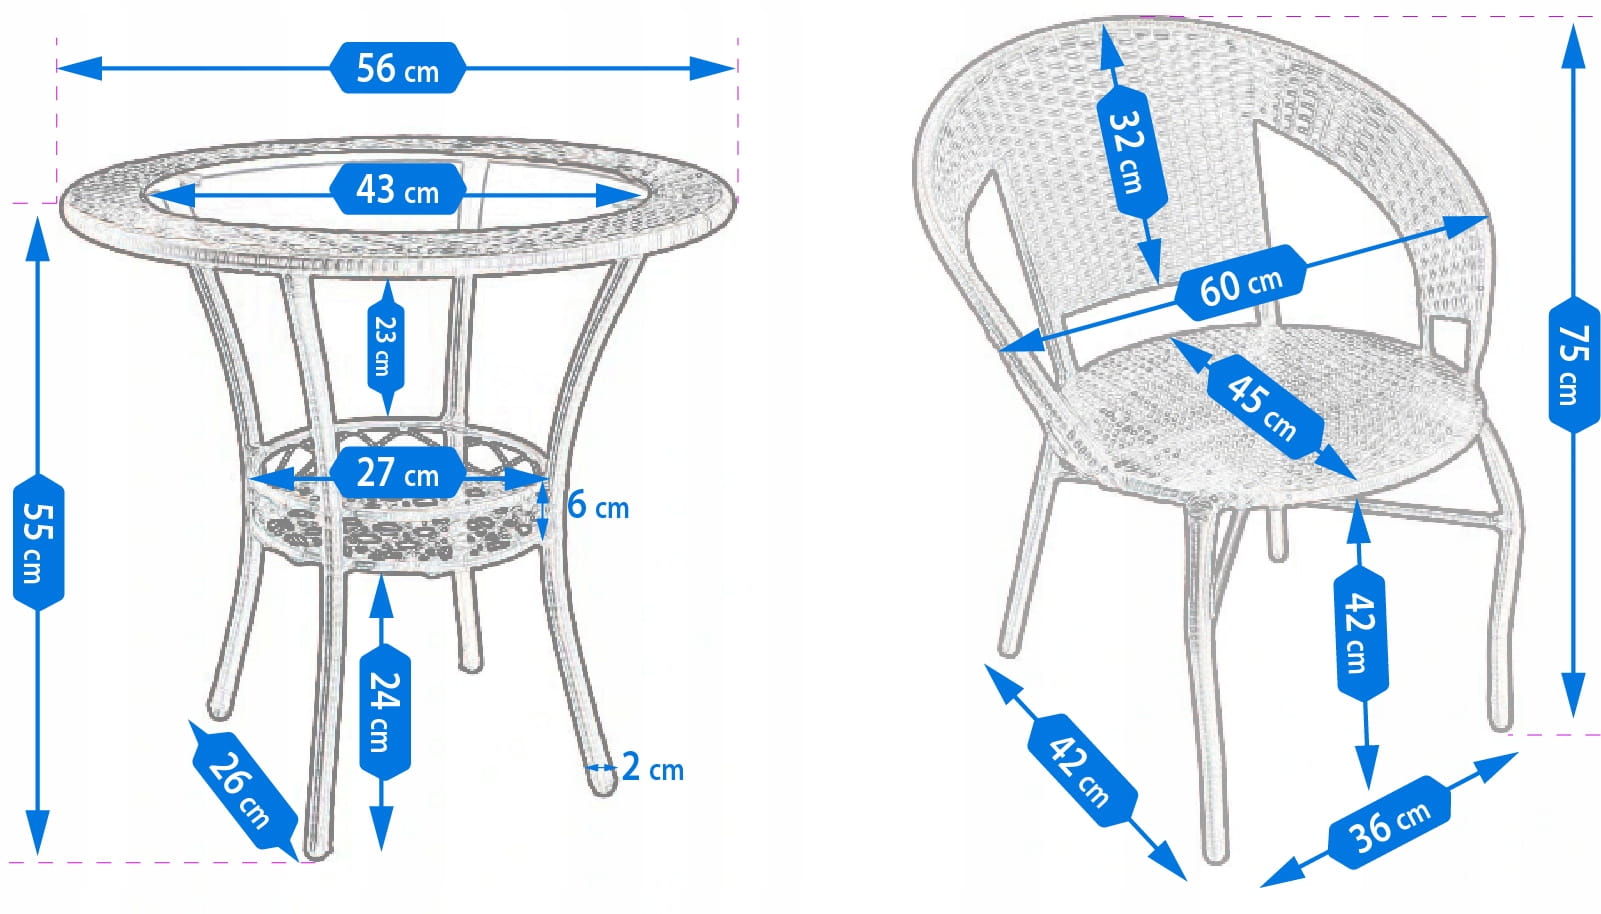 Meble-ogrodowe-TECHNORATTAN-stolik-krzesla-ZESTAW-Kolor-dominujacy-brazowy